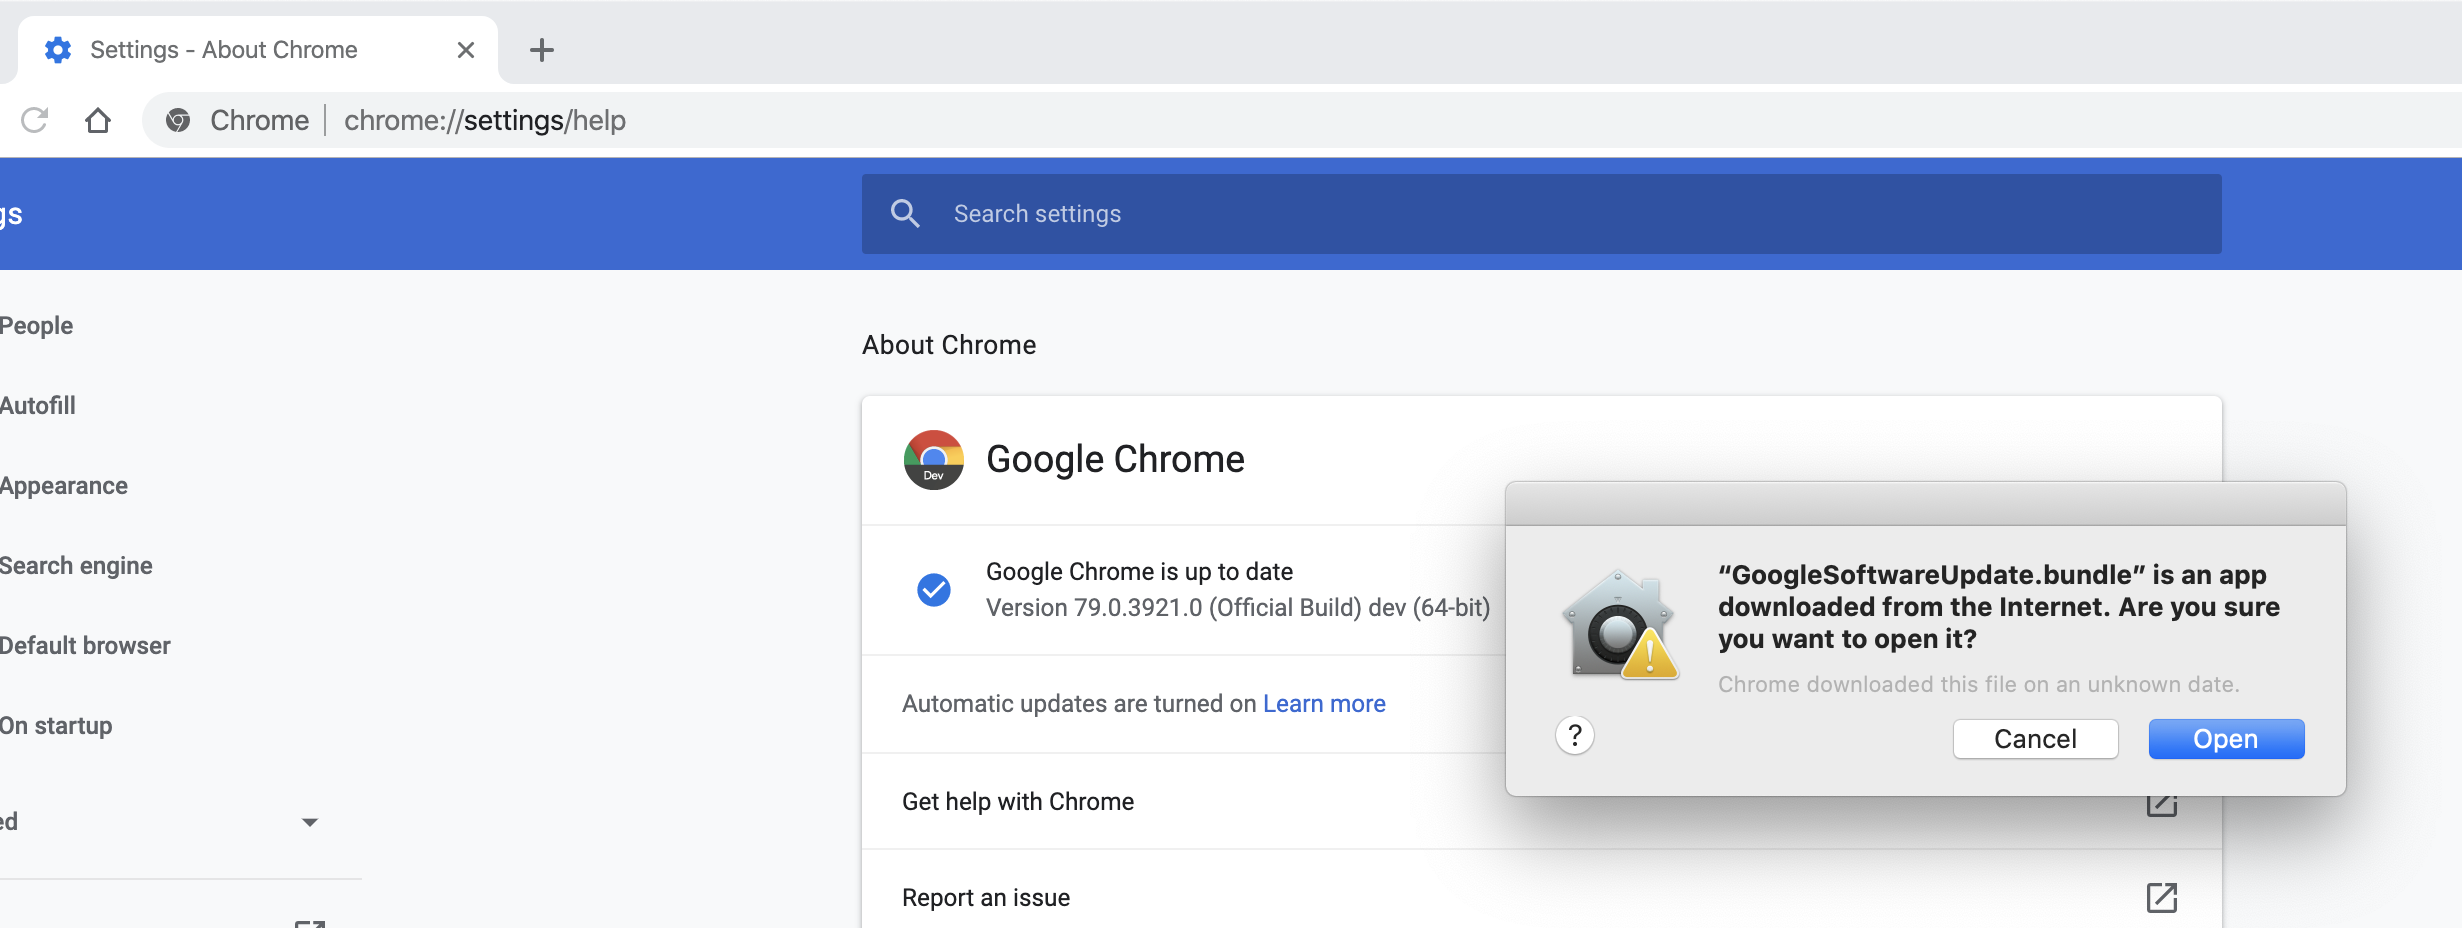 google chrome for mac set default page